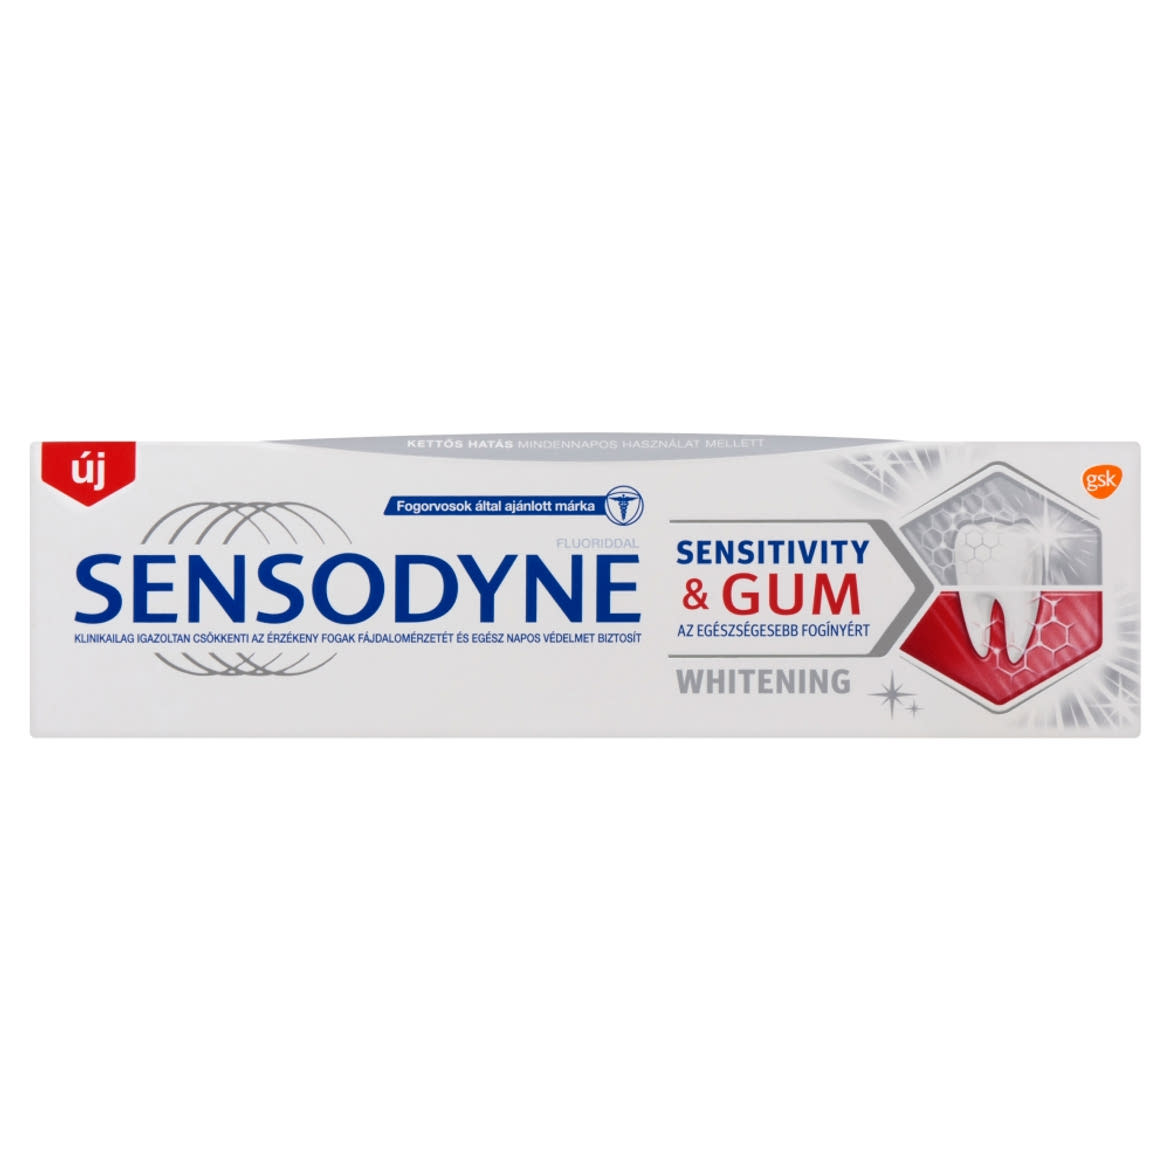 Sensodyne Sensitivity & Gum Whitening fogkrém